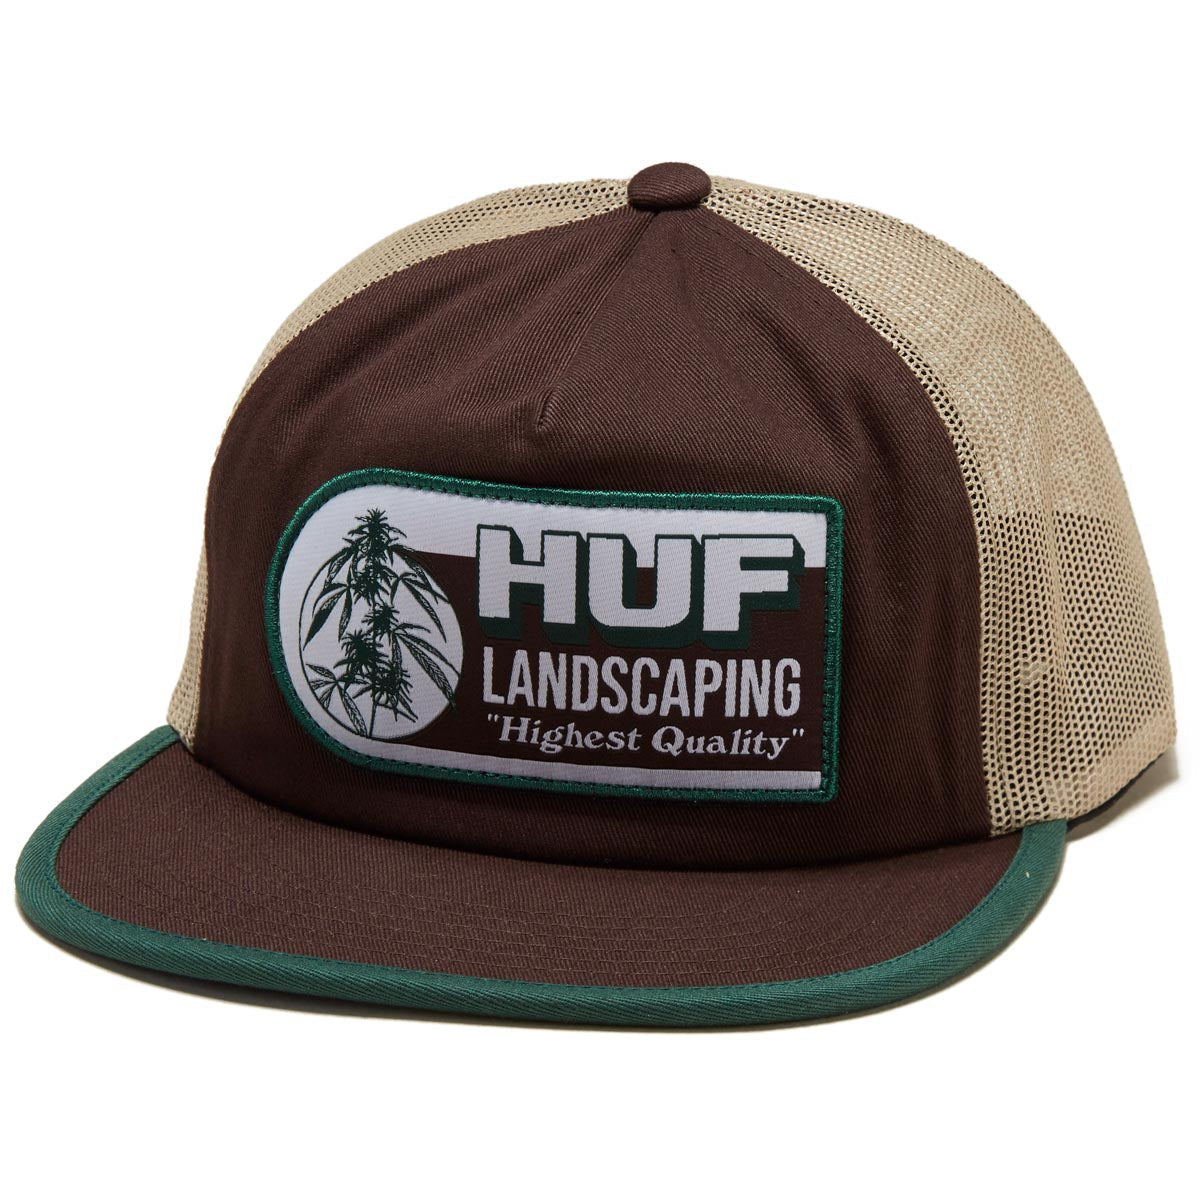 HUF Landscaping Trucker Hat - Bison image 1